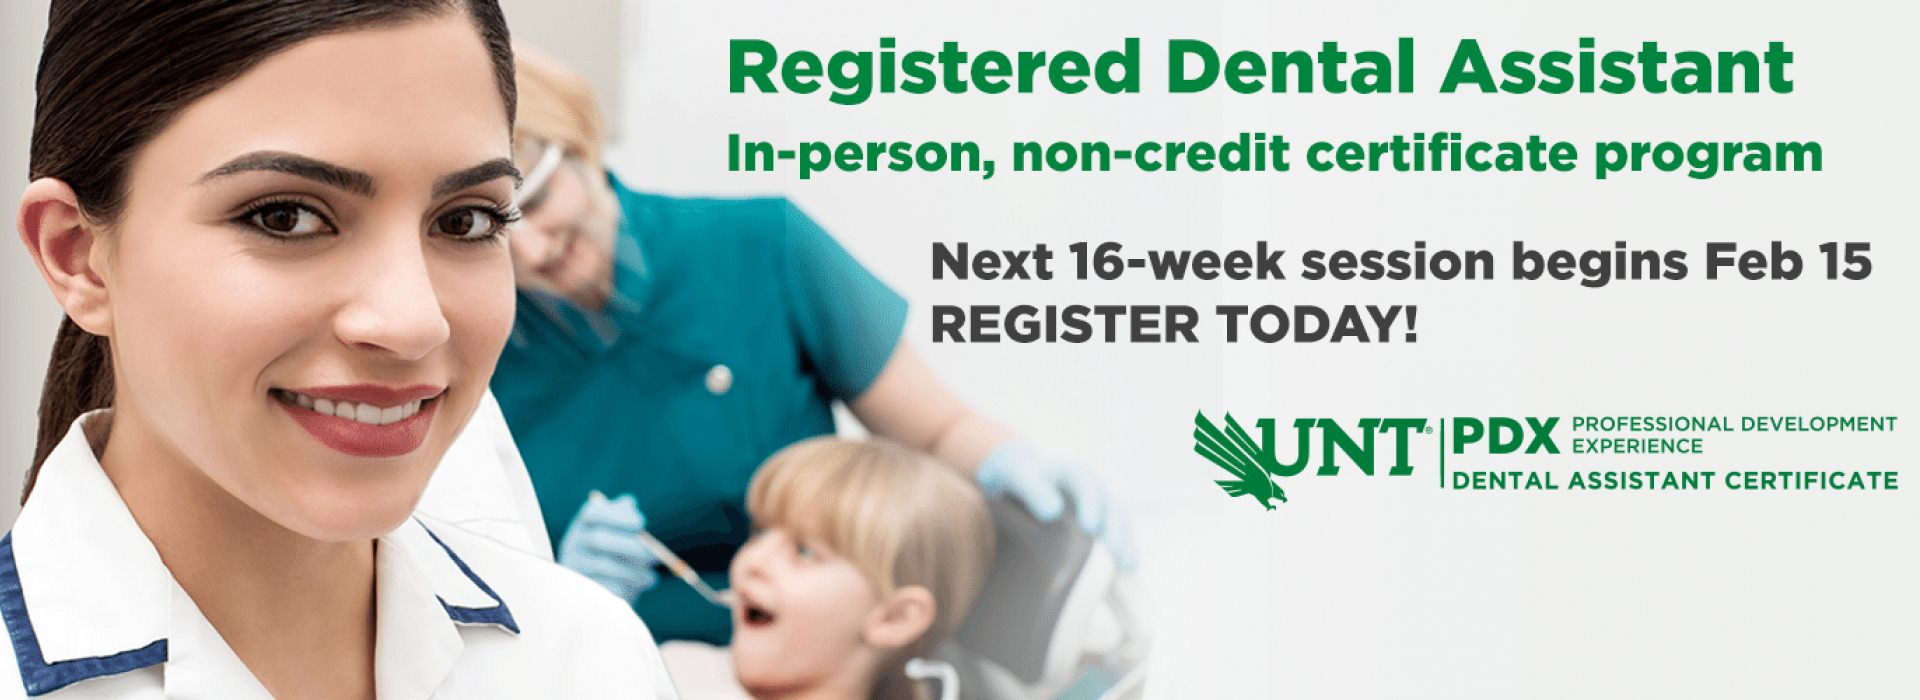 Registered Dental Assistant Certificate program